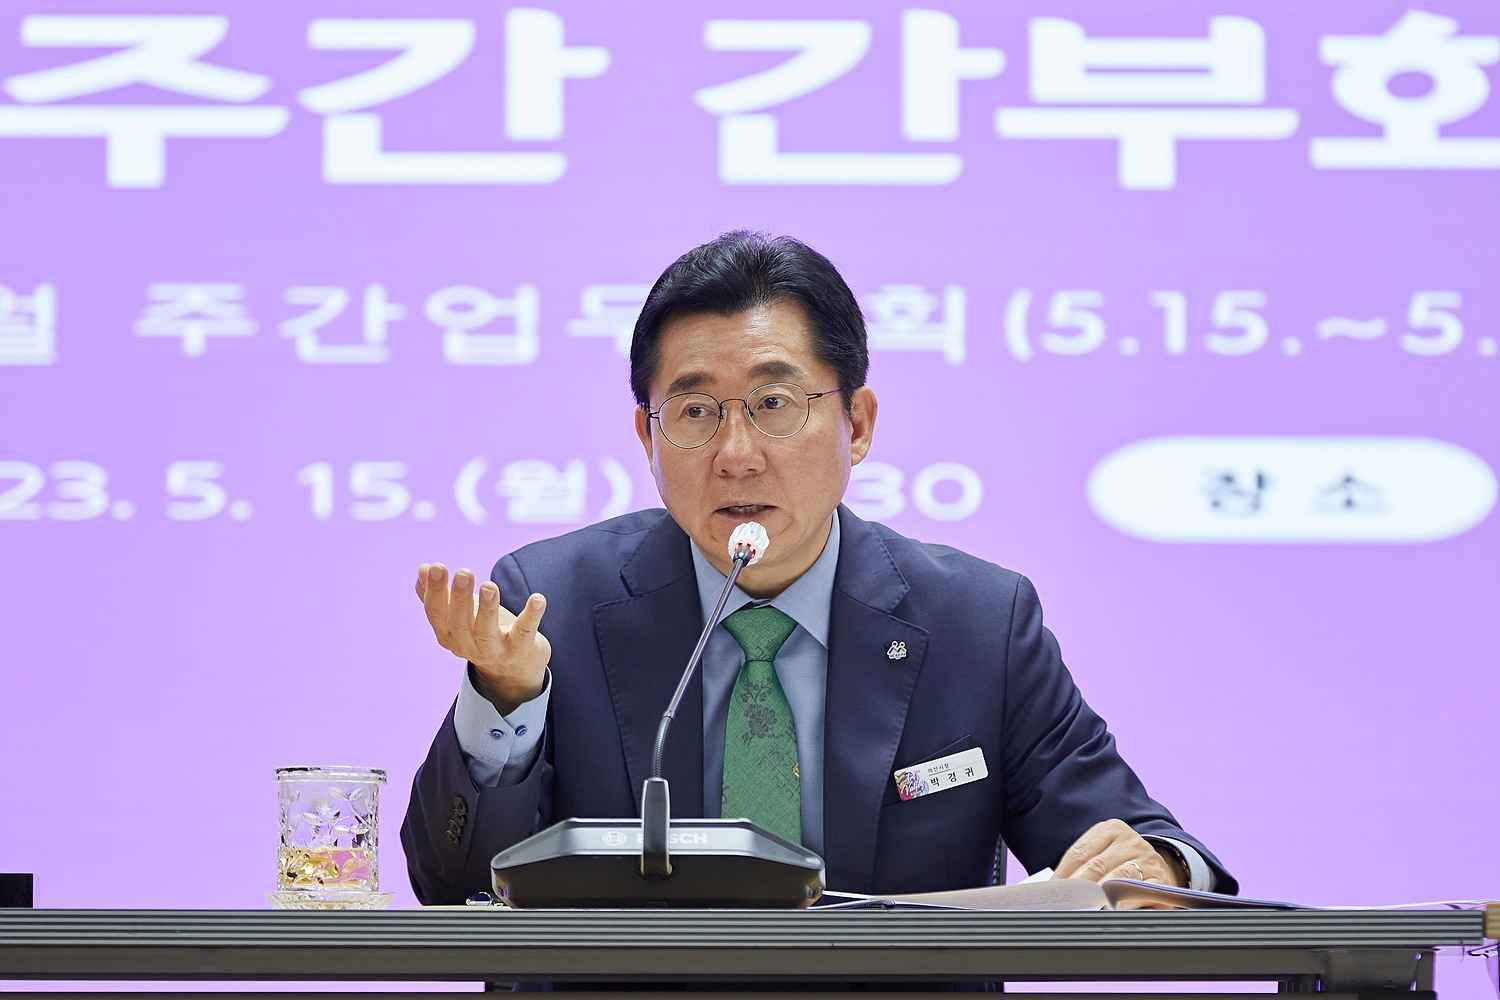 박경귀 아산시장 “정부예산 확보에 총력을 기해달라” 당부 관련사진